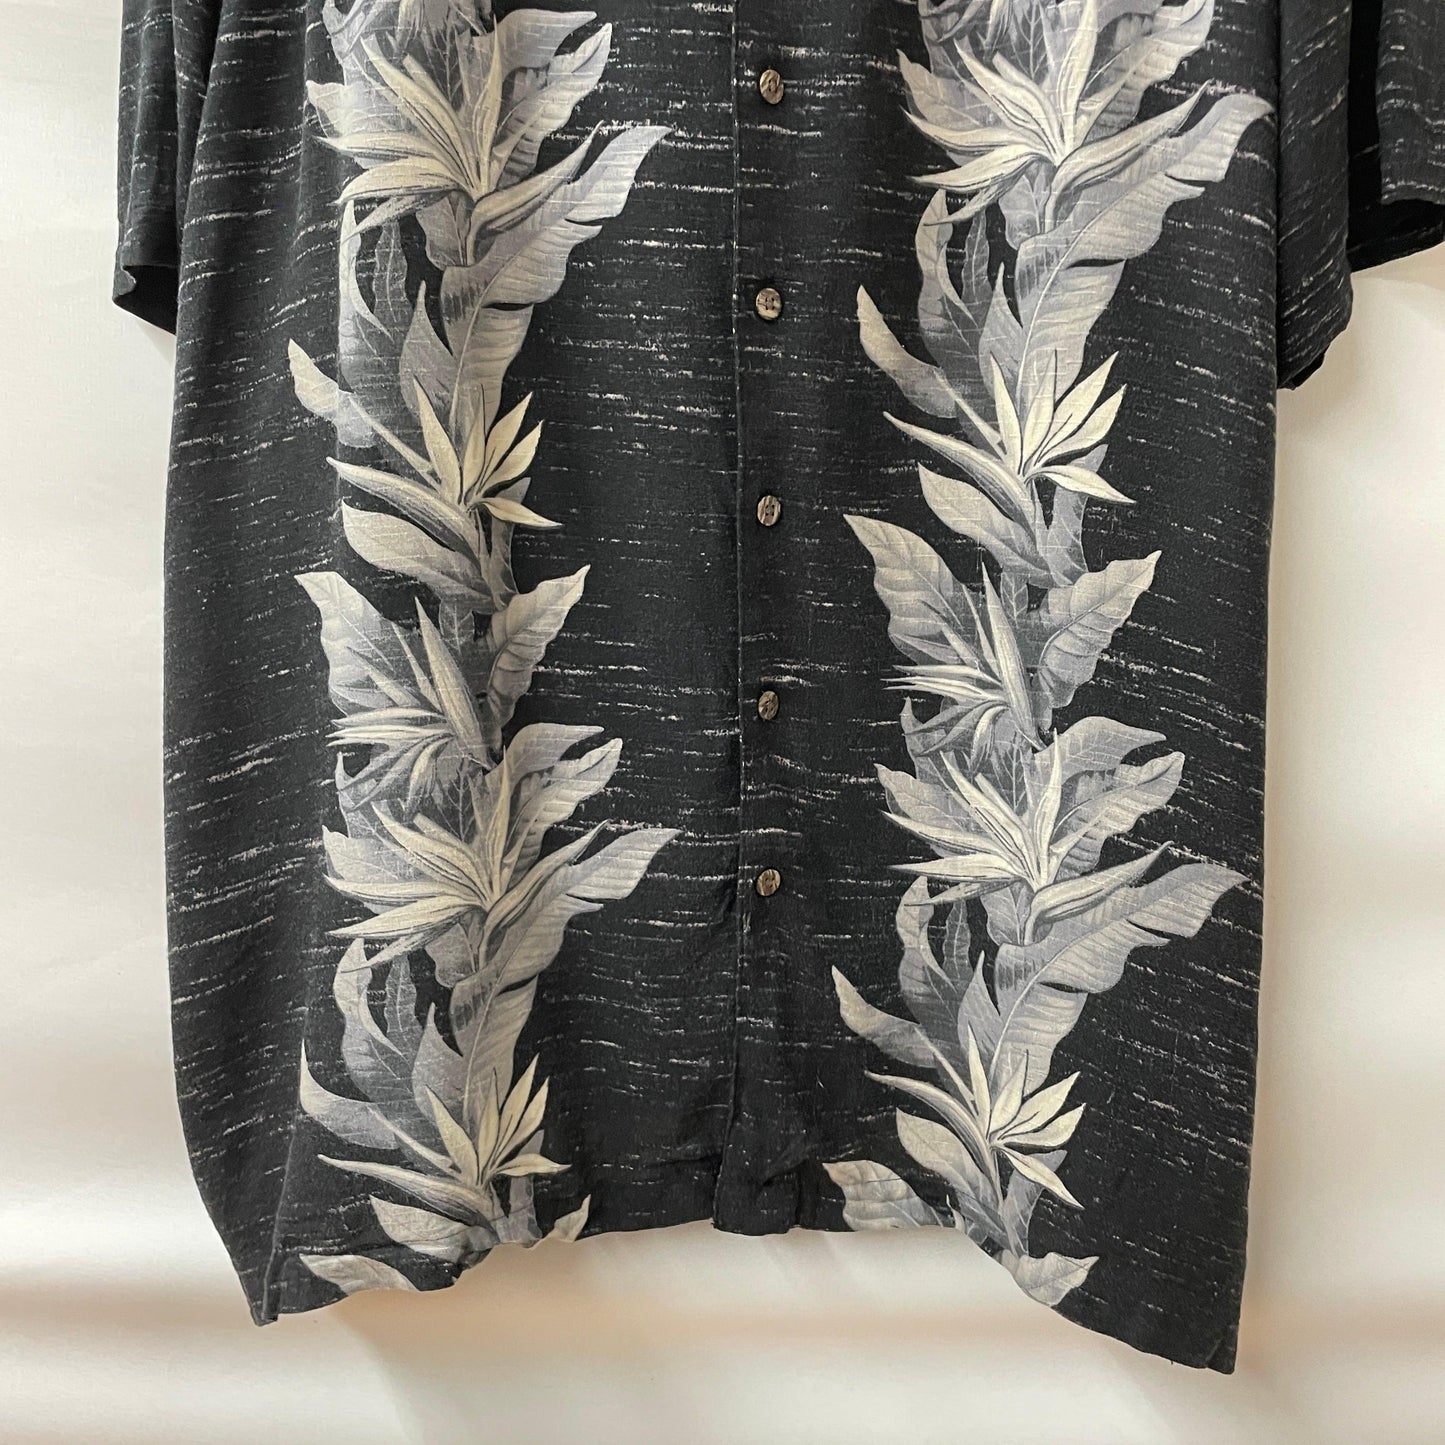 GEORGE Aloha shirt